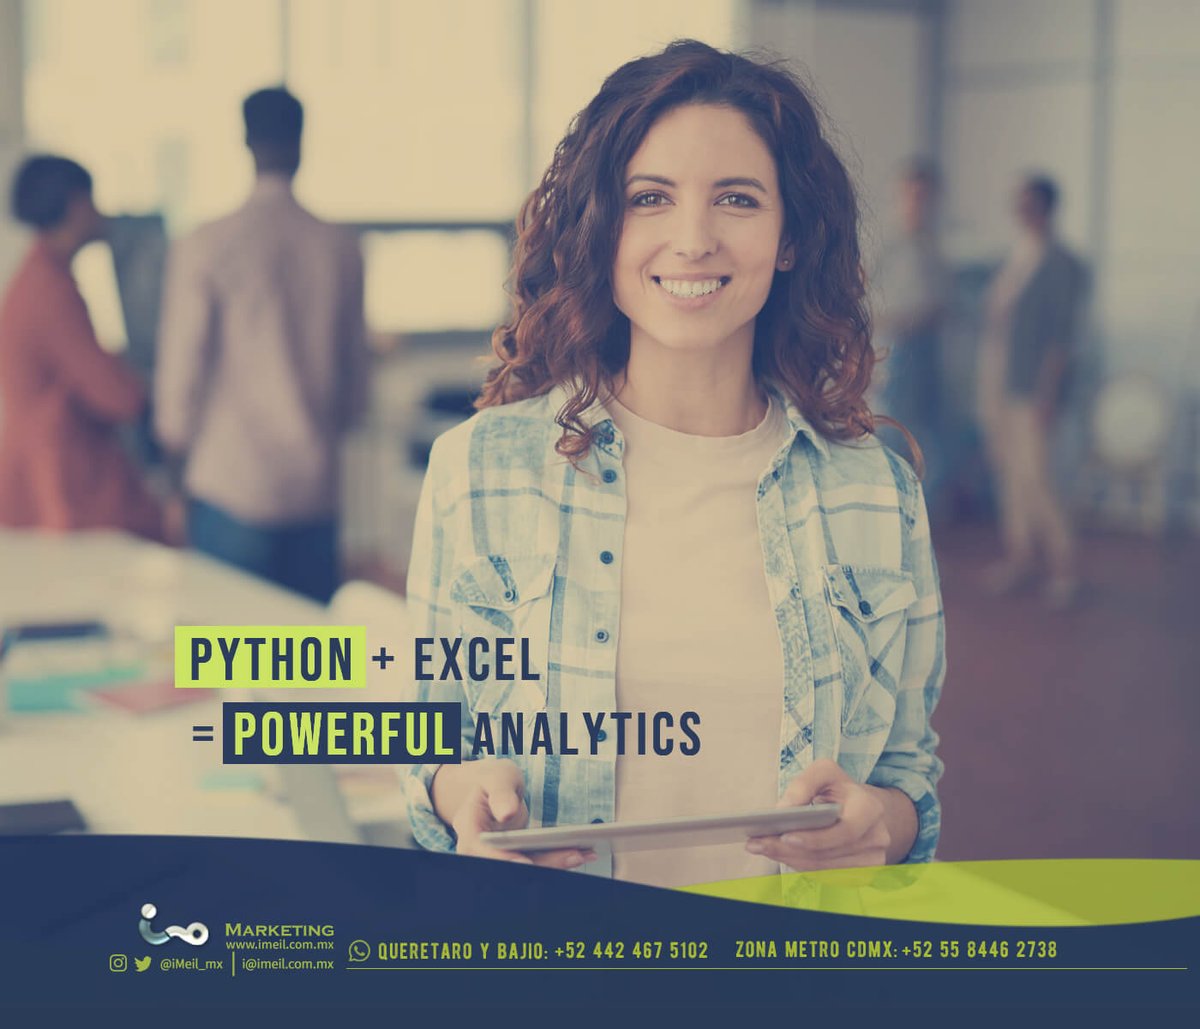 Python en Excel desafiará plataformas de análisis web en corto y mediano plazo

Imagina conectar, en vivo y 'sobre la marcha', a los web logs para ver resultados de tu última campaña

¿Están preparados los desarrolladores para tal desafío?

#cmo #branding #MarketingIntelligence